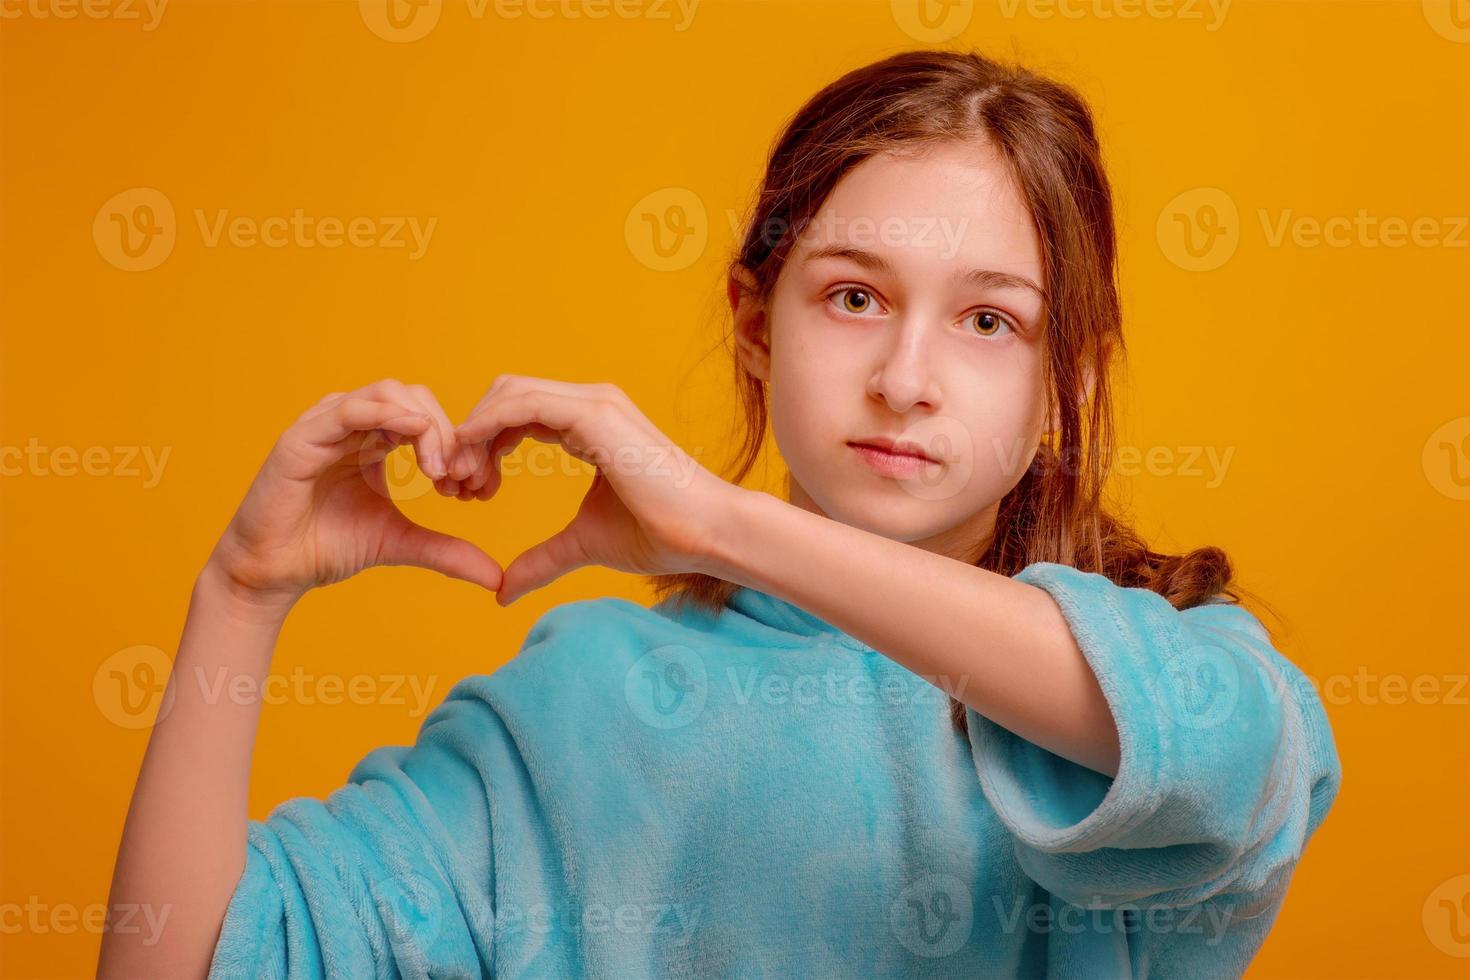 garota pela paz, pare a guerra. garota com um capuz azul sobre um fundo amarelo mostra as mãos para o coração. foto